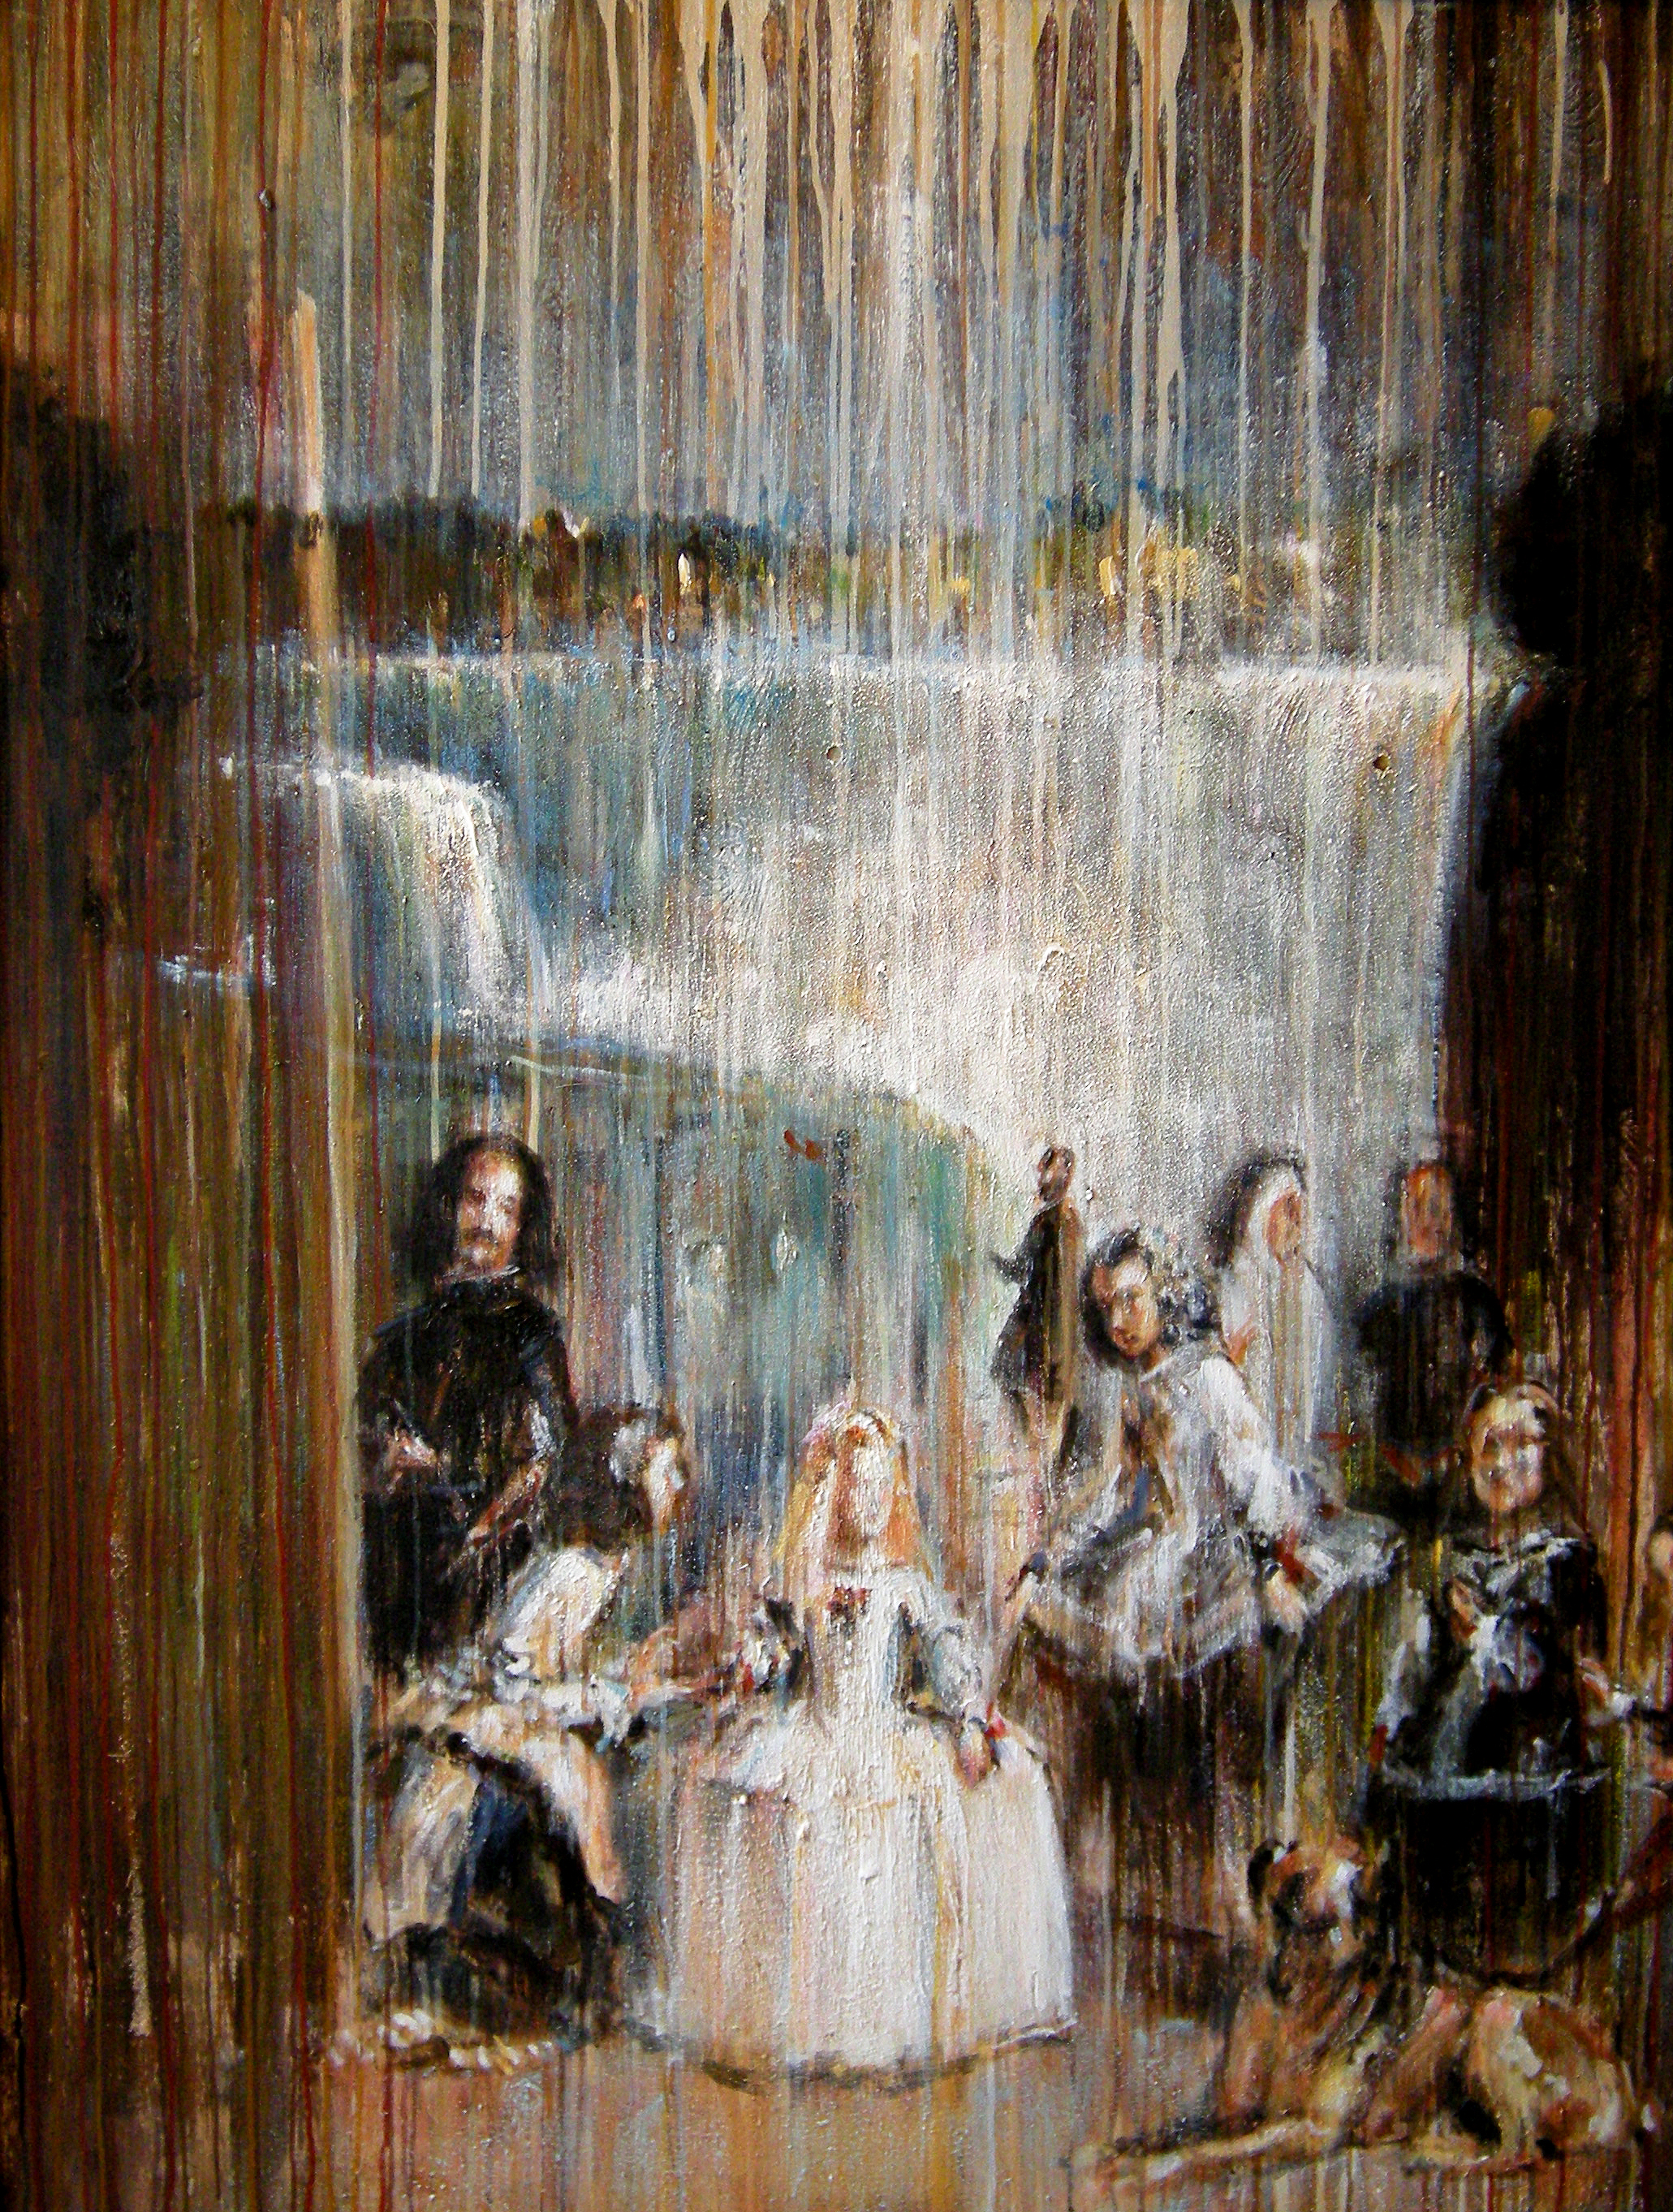 Little Girl Renaissance Classic Niagra Falls